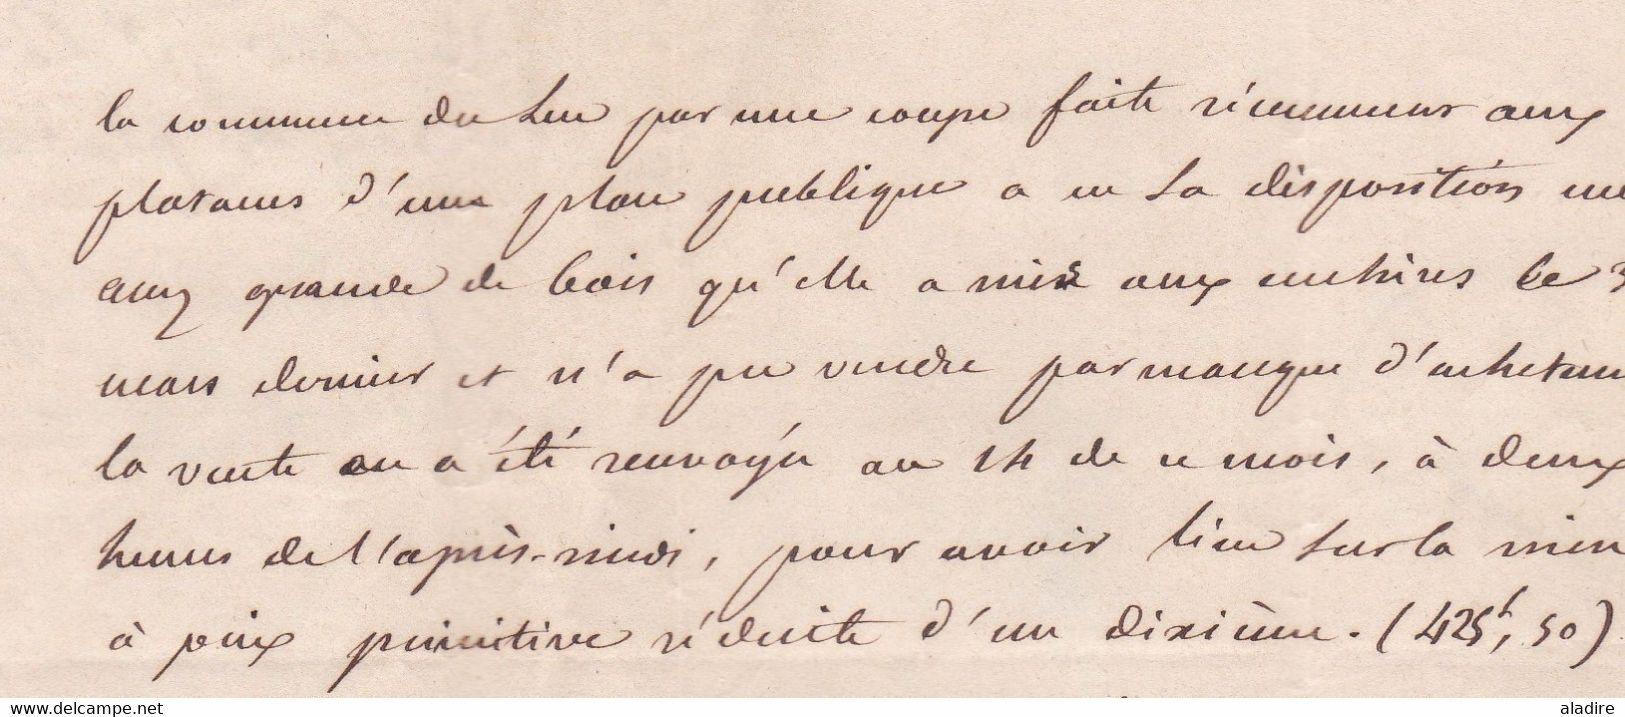 1844 - Cachet à date 14 sur Lettre avec correspondance en Port Payé de Le Luc, Var  vers Brignoles - cad arrivée